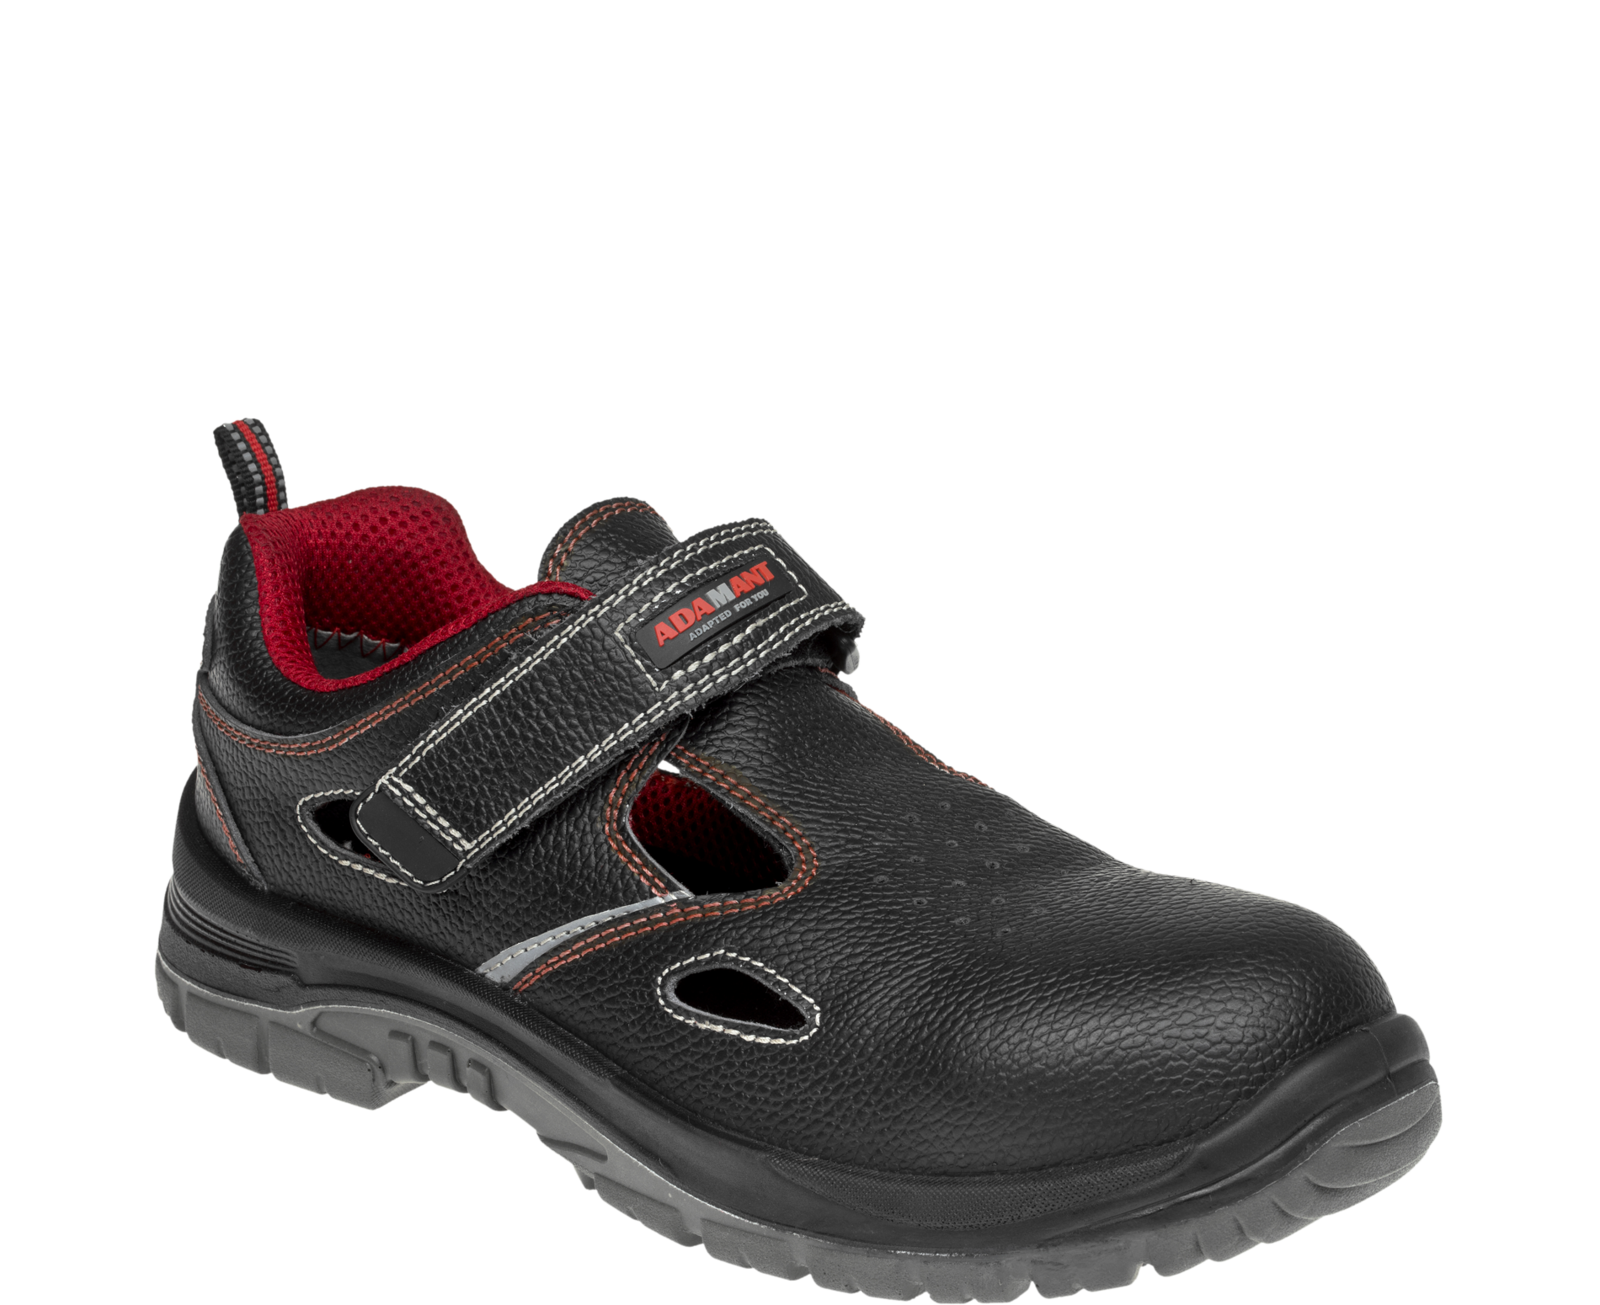 Bezpečnostné sandále Adamant Non Metallic S1 SRC - veľkosť: 46, farba: čierna/červená